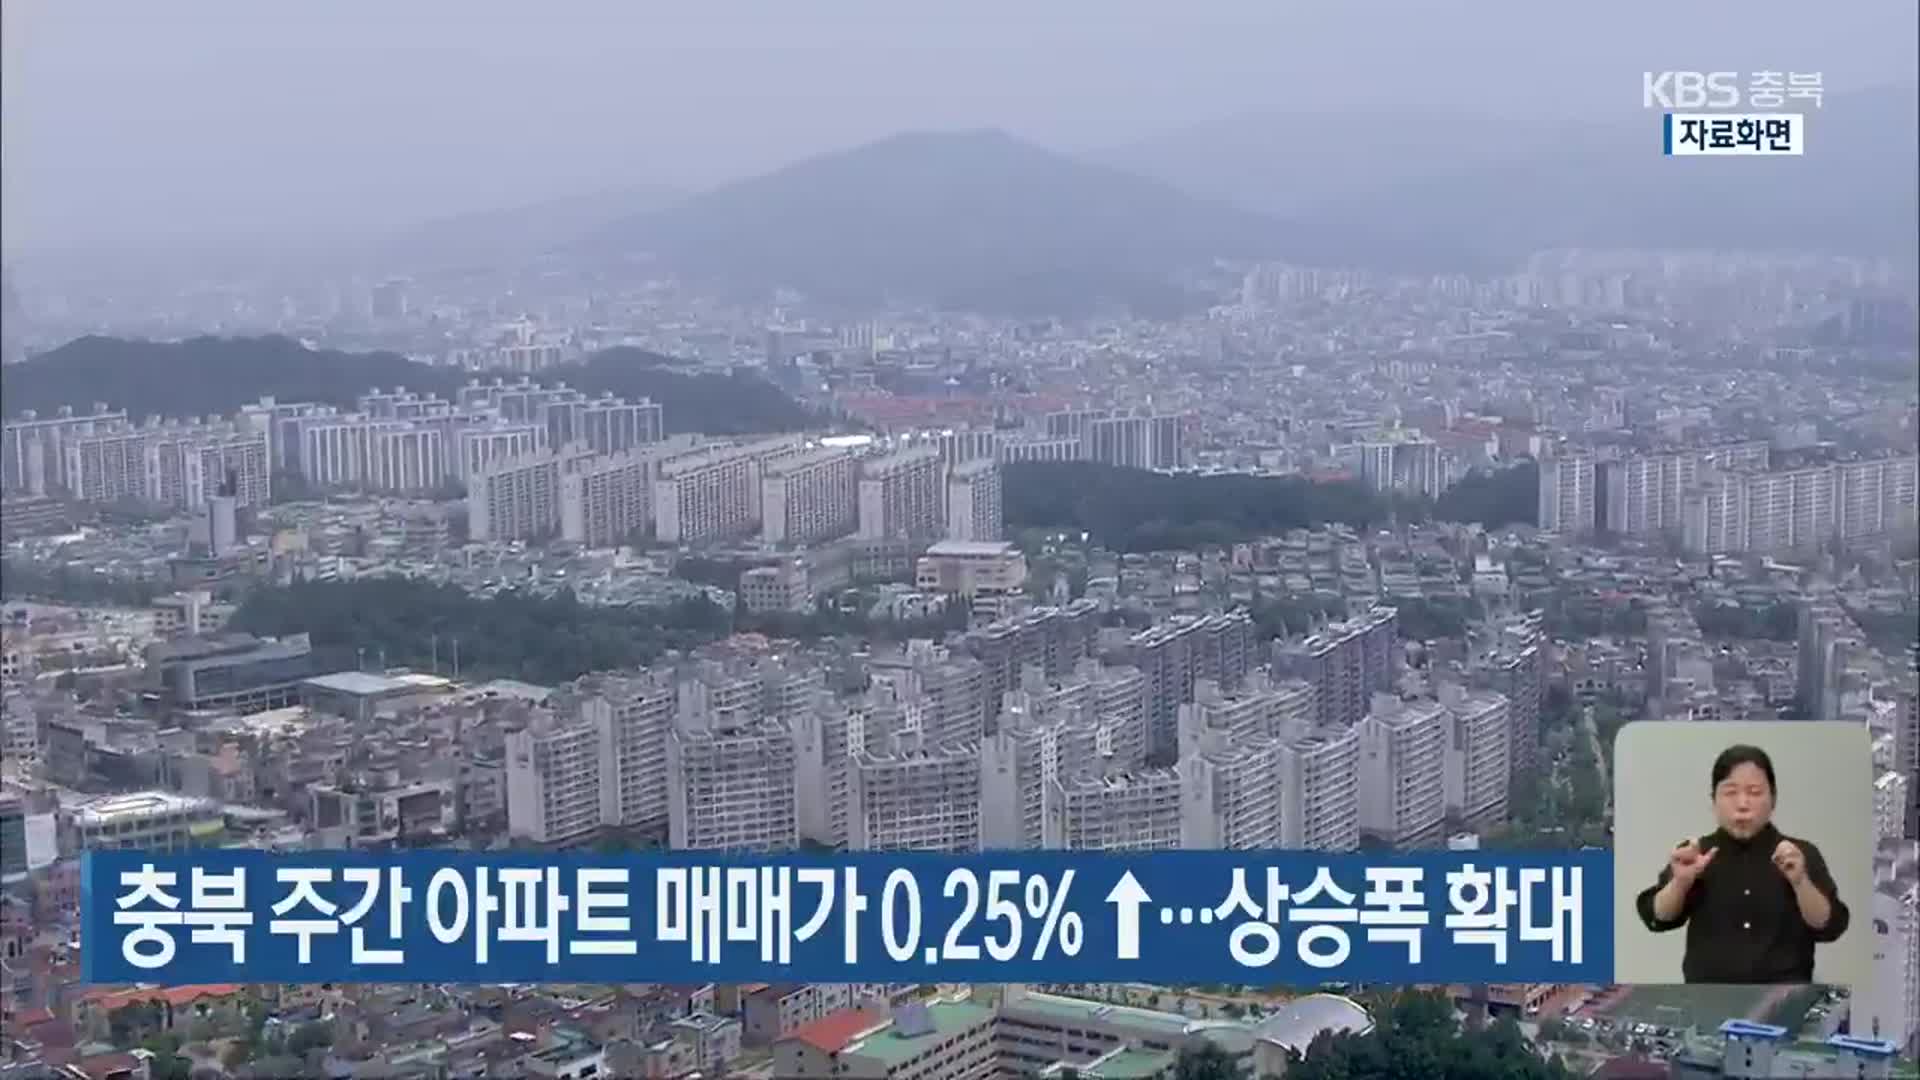 충북 주간 아파트 매매가 0.25%↑…상승폭 확대